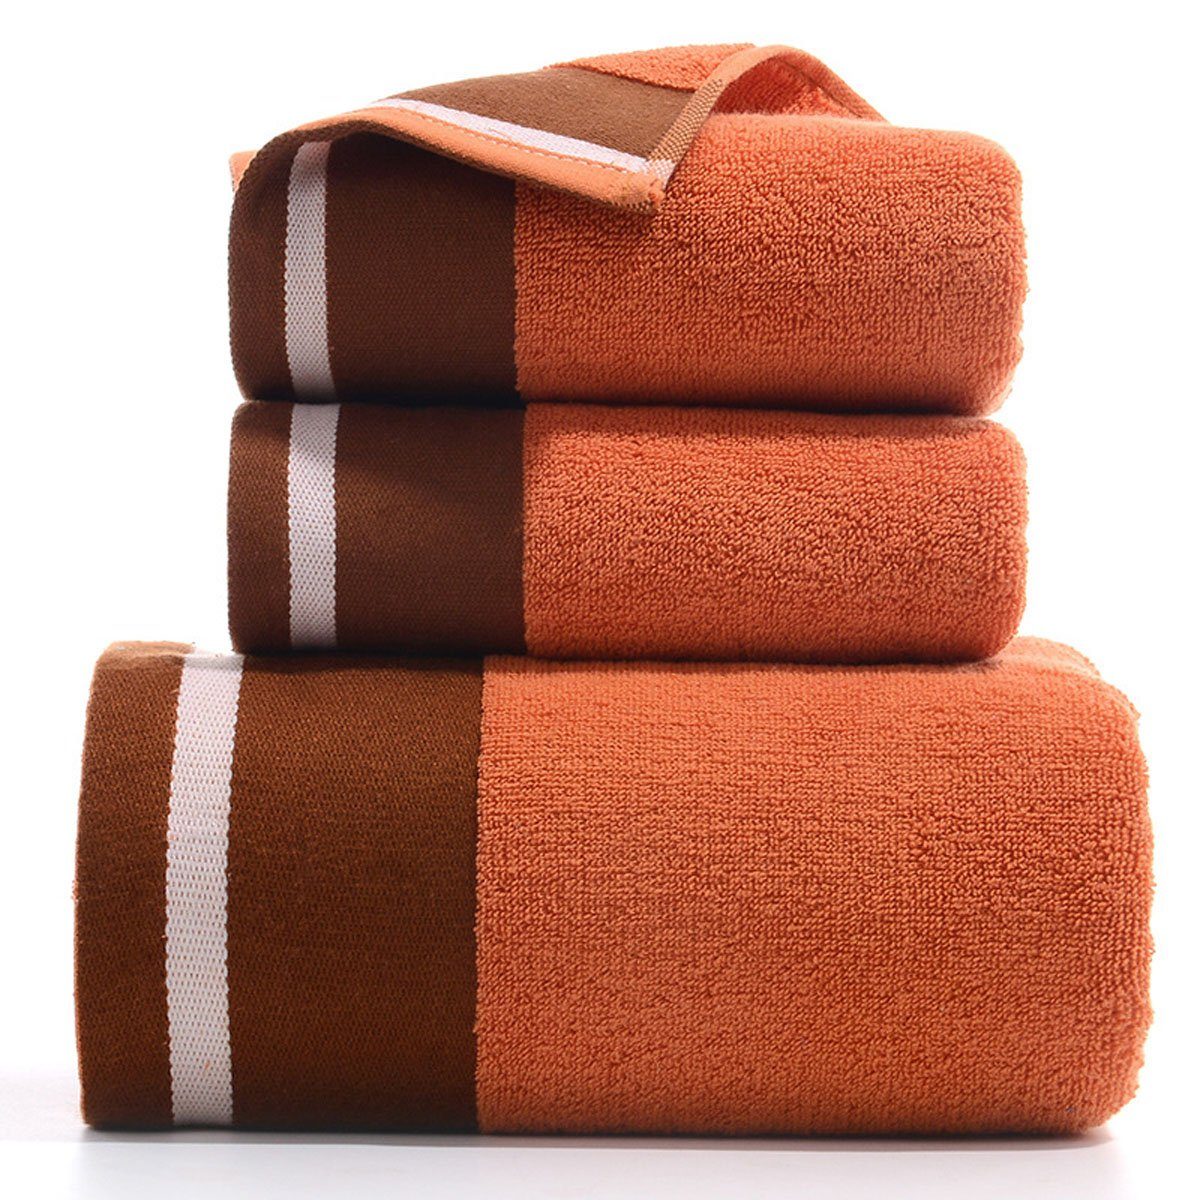 Handtuch und Set zu Jormftte weich,für Orange Handtücher Set-2xHandtuch,1xBadetuch,saugfähig Hause